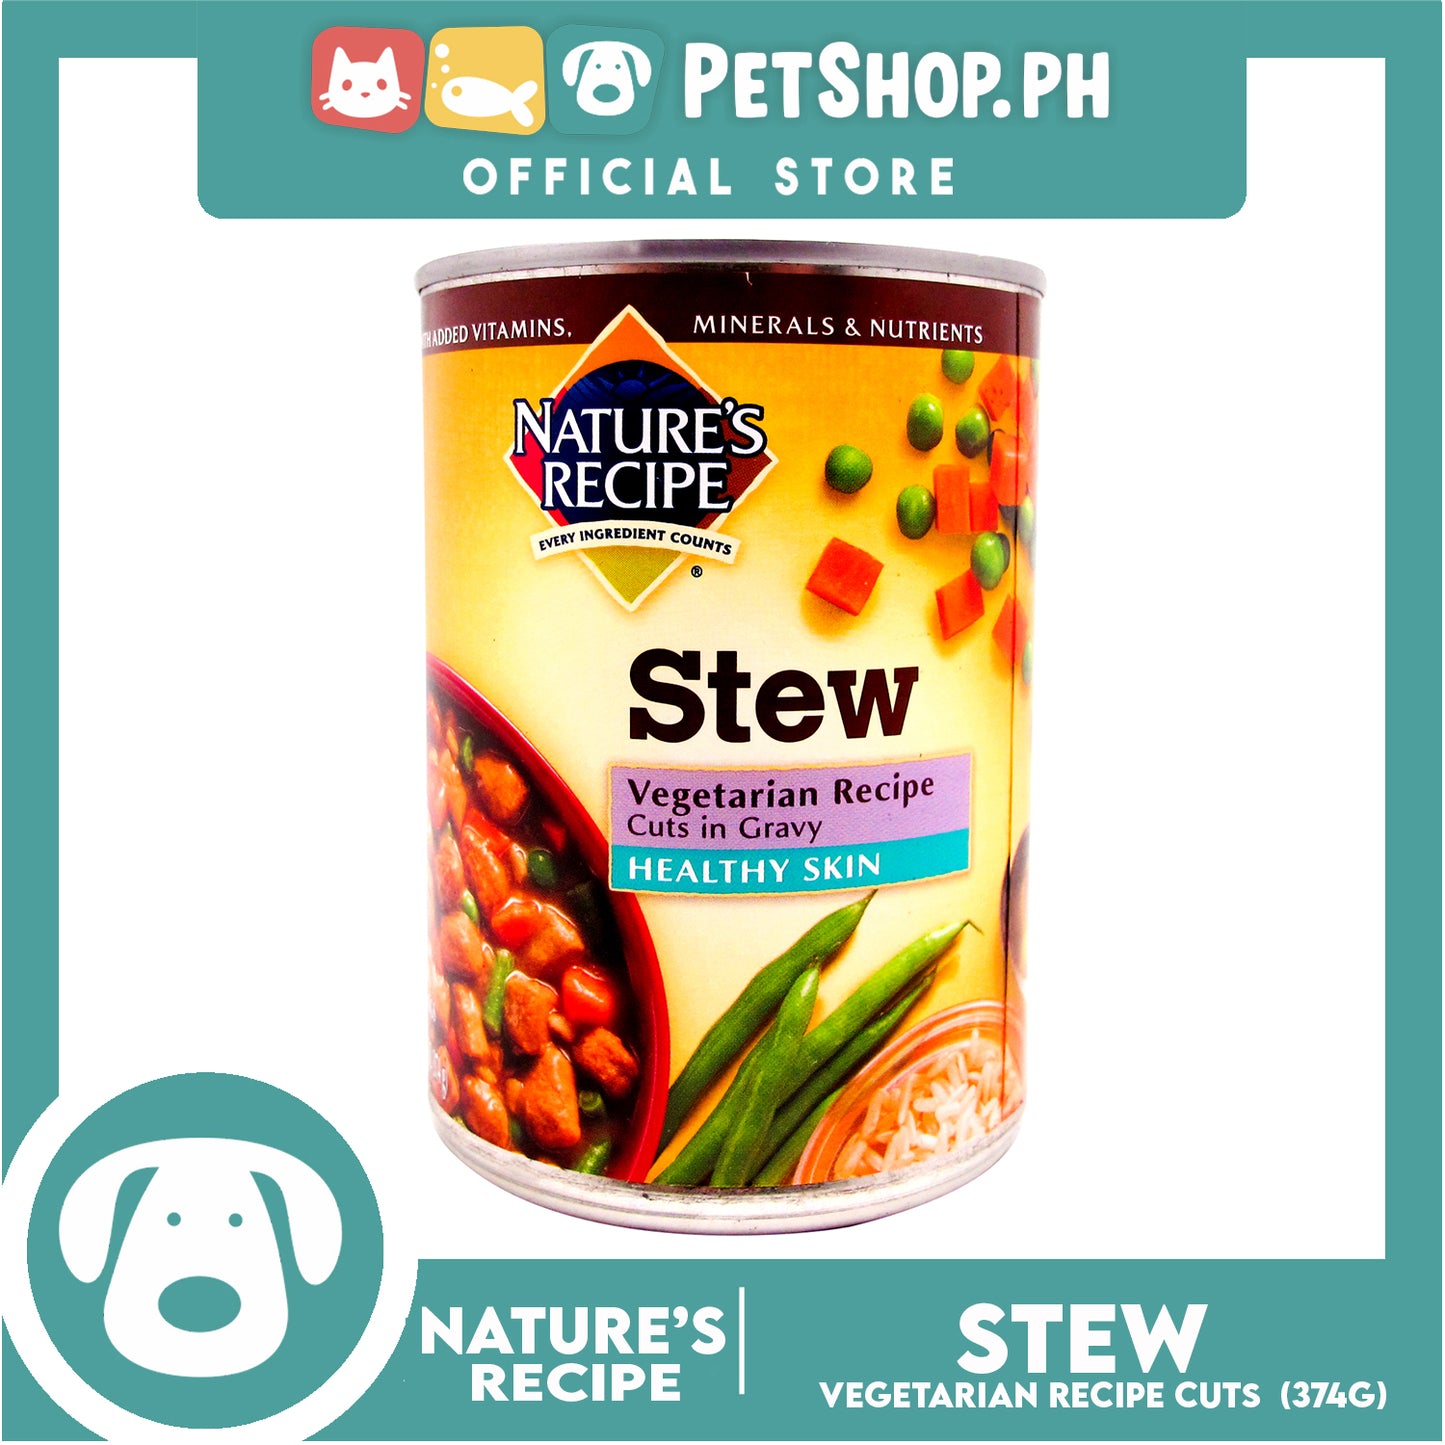 Nature's Recipe Stew Vegetarian Recipe Cuts in Gravy 374g